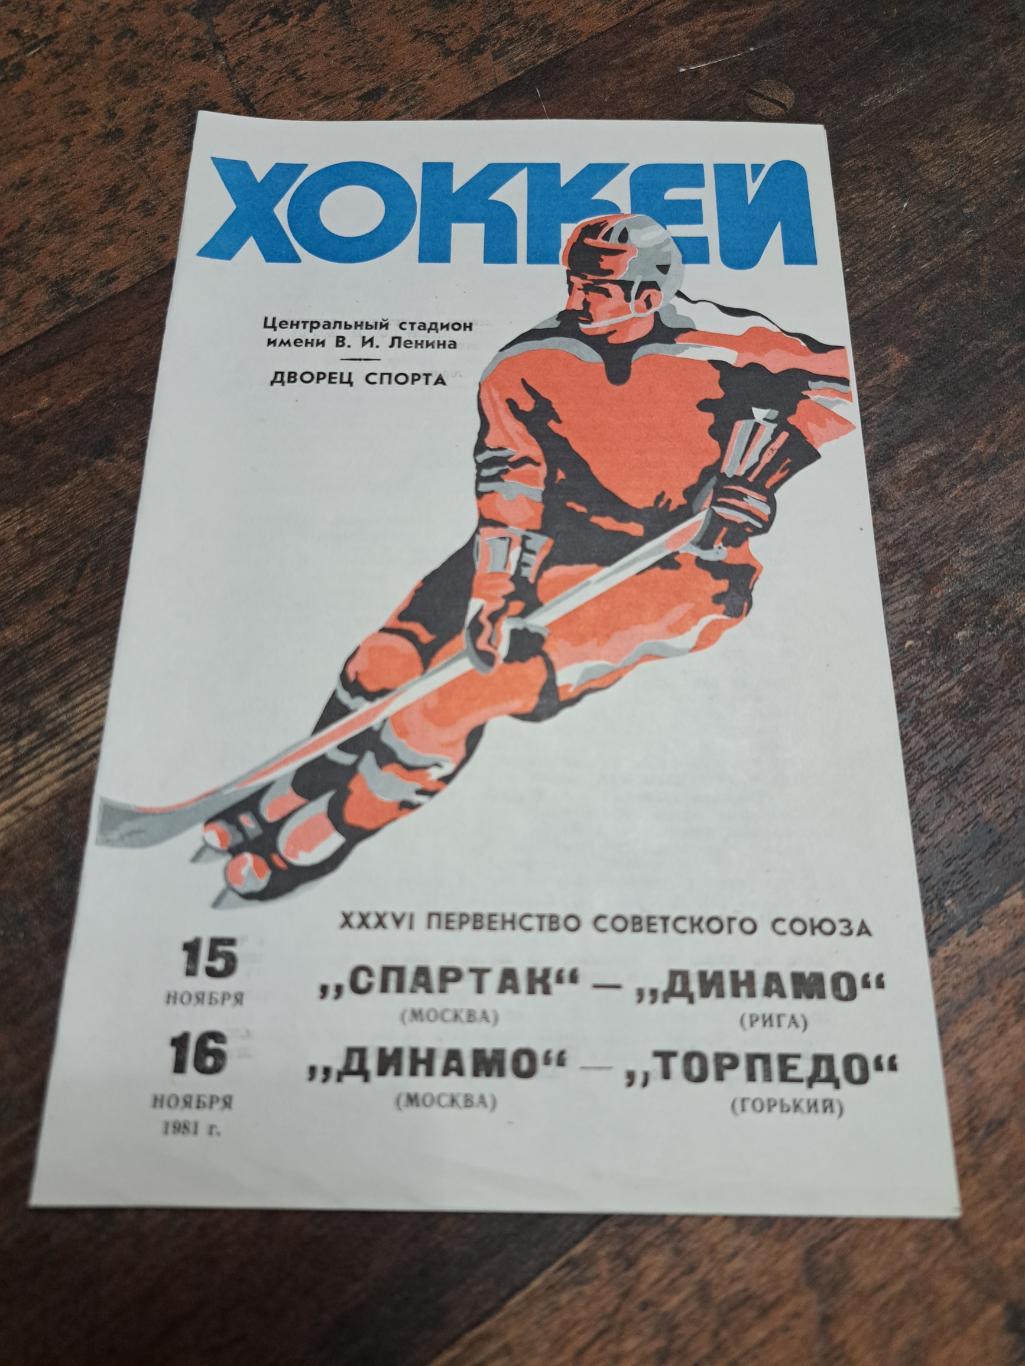 Спартак Москва-Динамо Рига,Динамо Москва-Торпедо Г. 15-16.11.1981 отл.состояние!